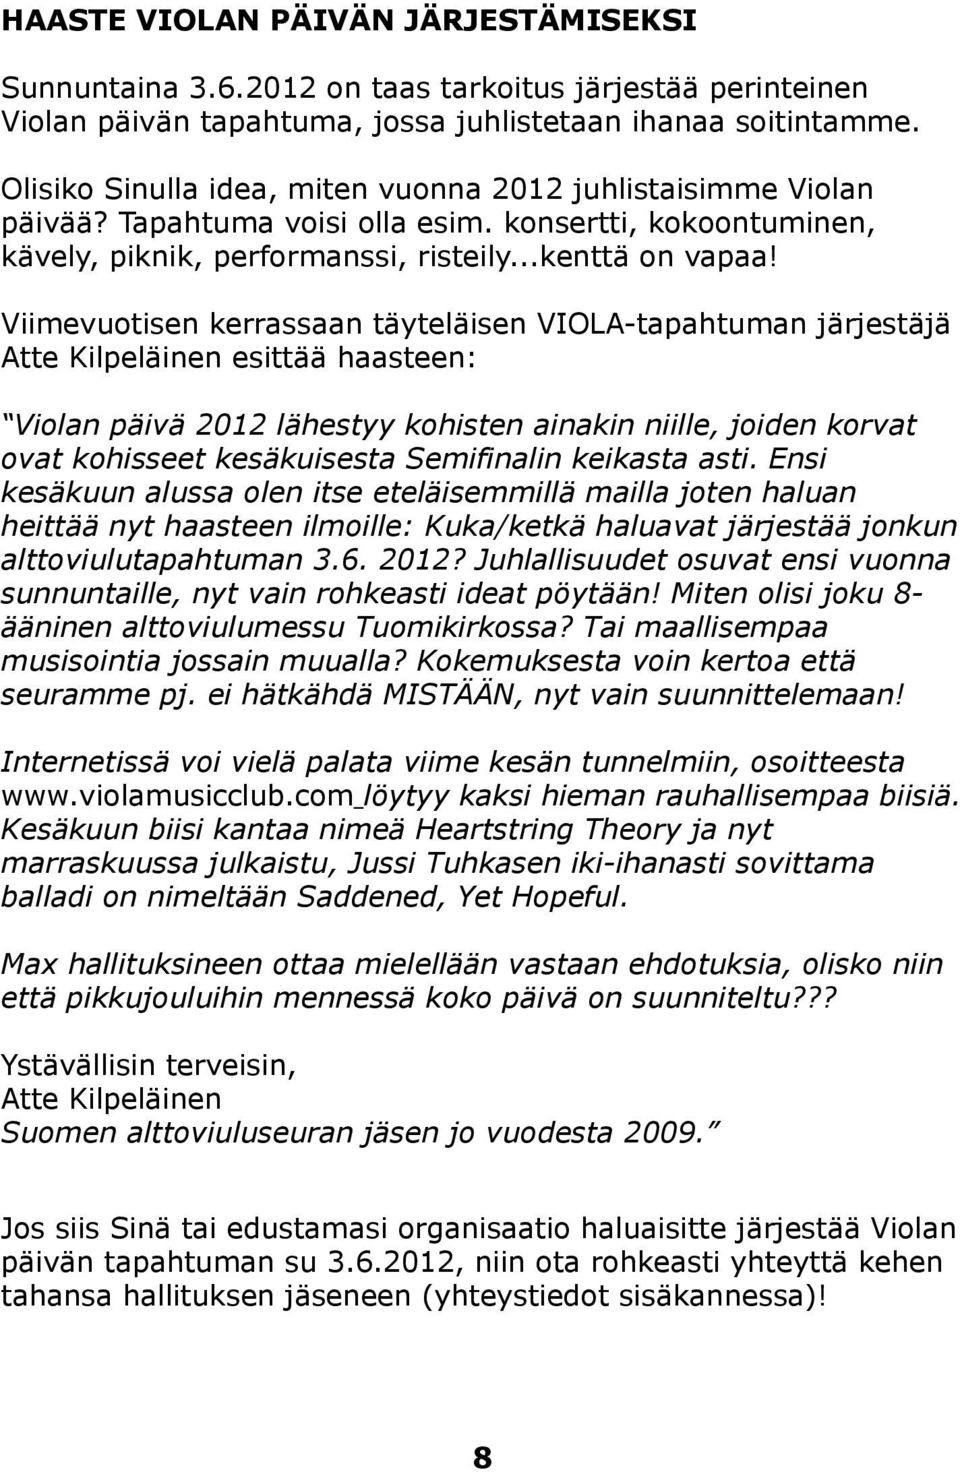 Viimevuotisen kerrassaan täyteläisen VIOLA-tapahtuman järjestäjä Atte Kilpeläinen esittää haasteen: Violan päivä 2012 lähestyy kohisten ainakin niille, joiden korvat ovat kohisseet kesäkuisesta